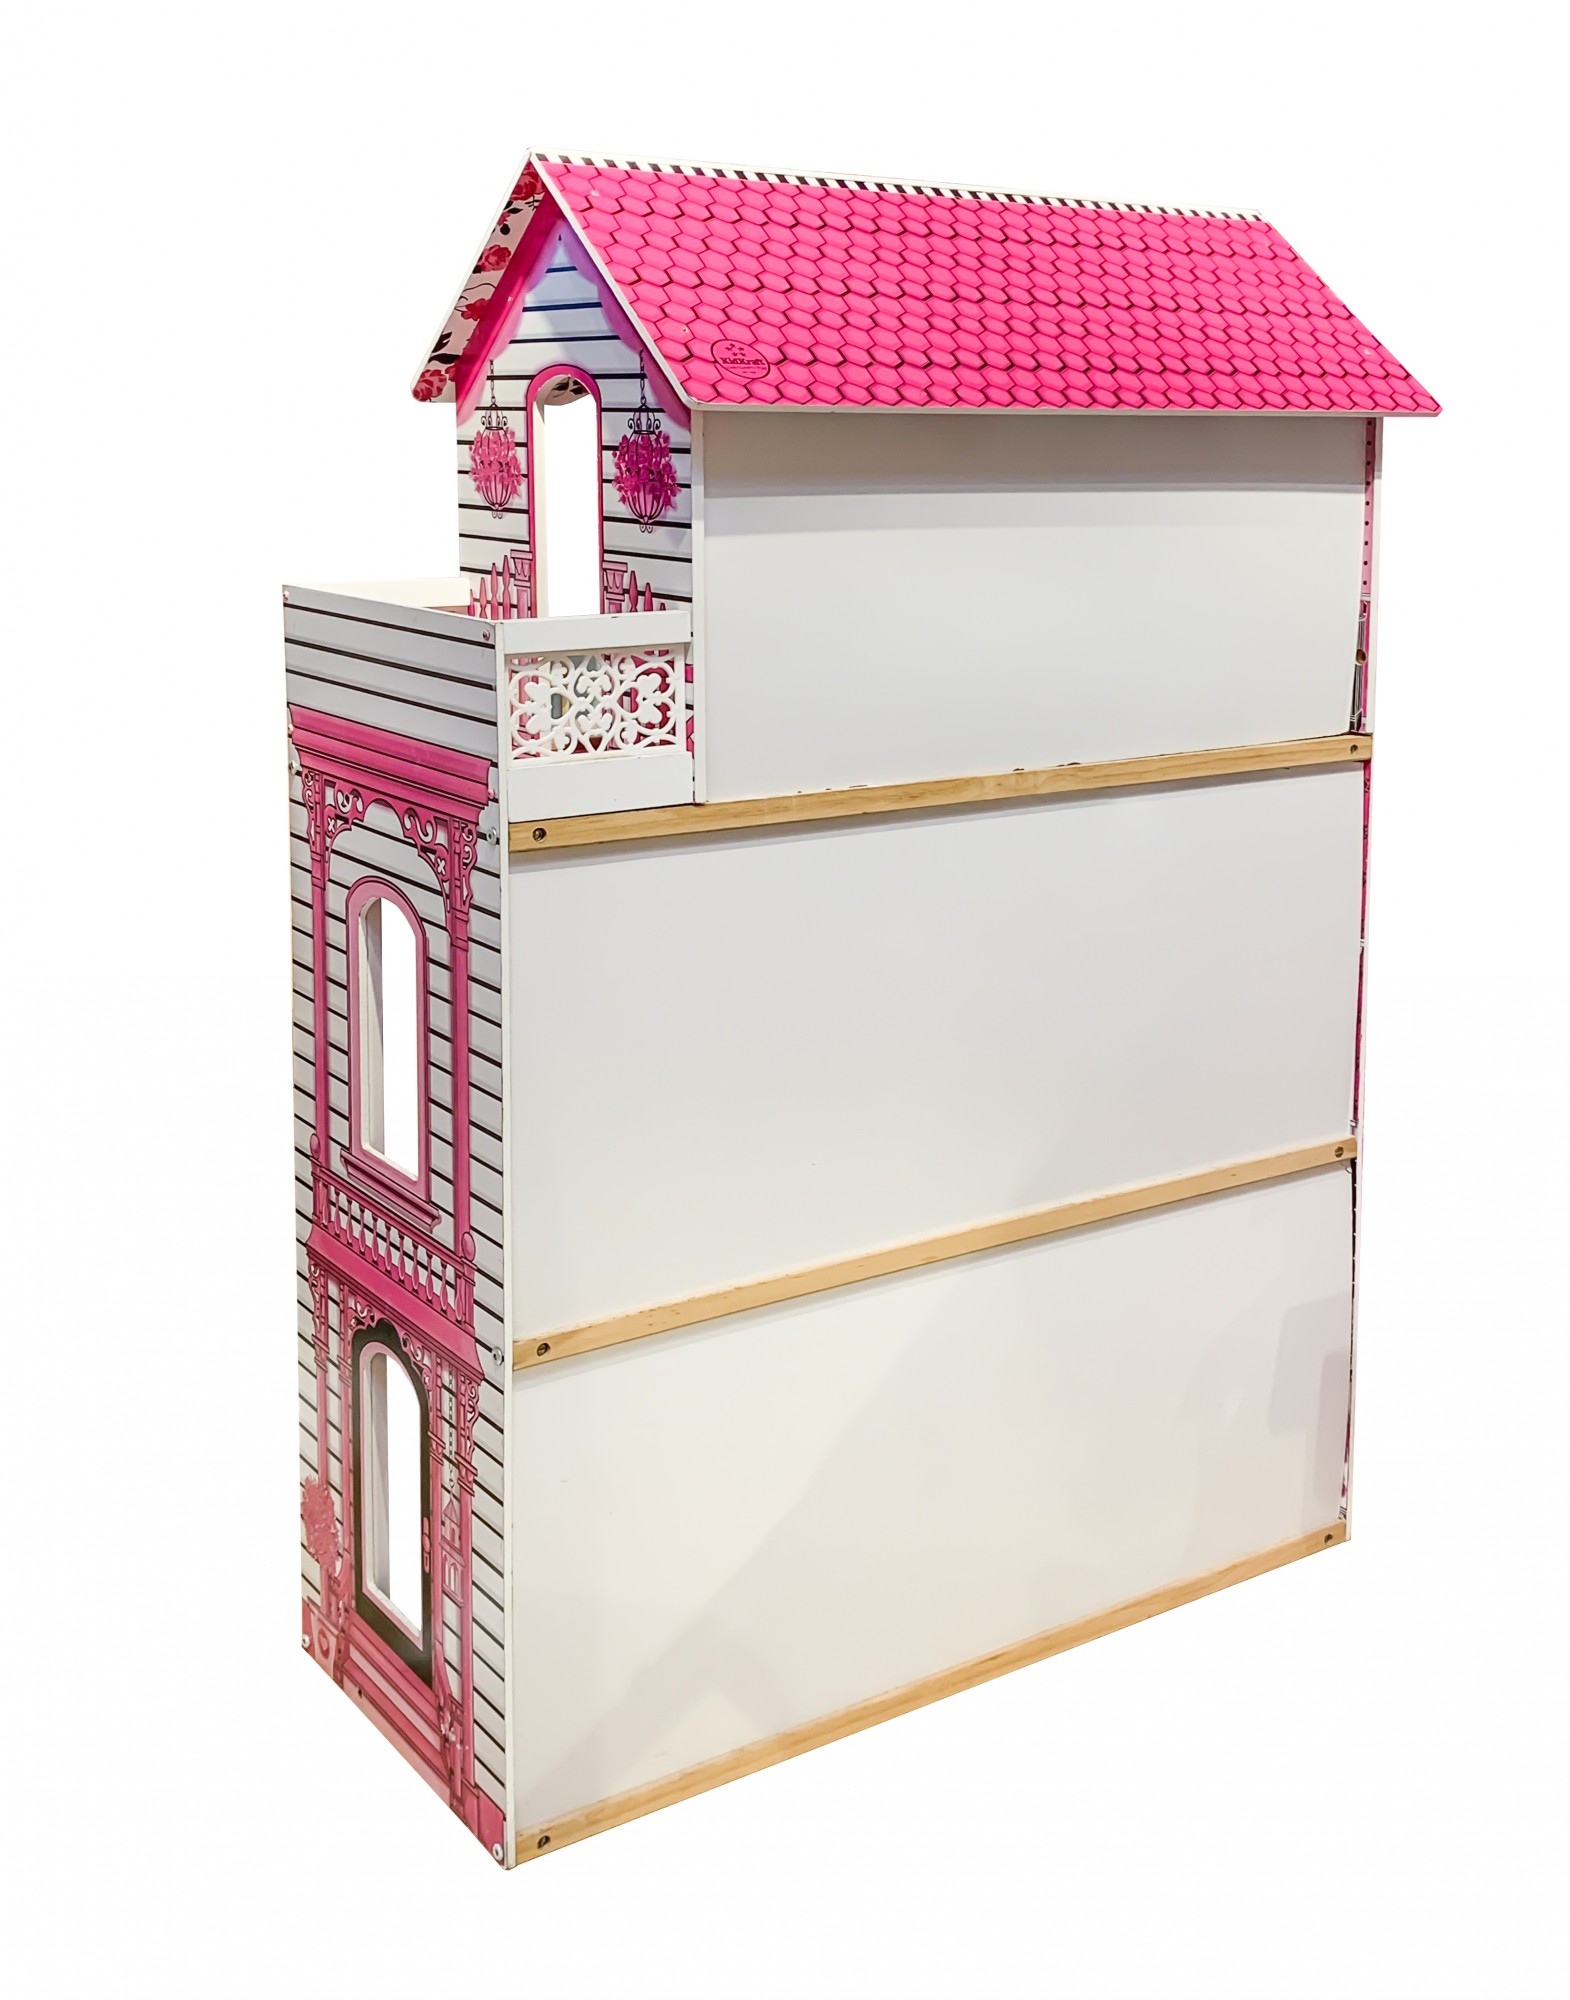 Infantastic - Maison de poupée en bois XXXL - Mobilier - Lumières LED -  Jouets éducatifs - 3 niveaux de jeu - 121 x 80 x 41 cm.